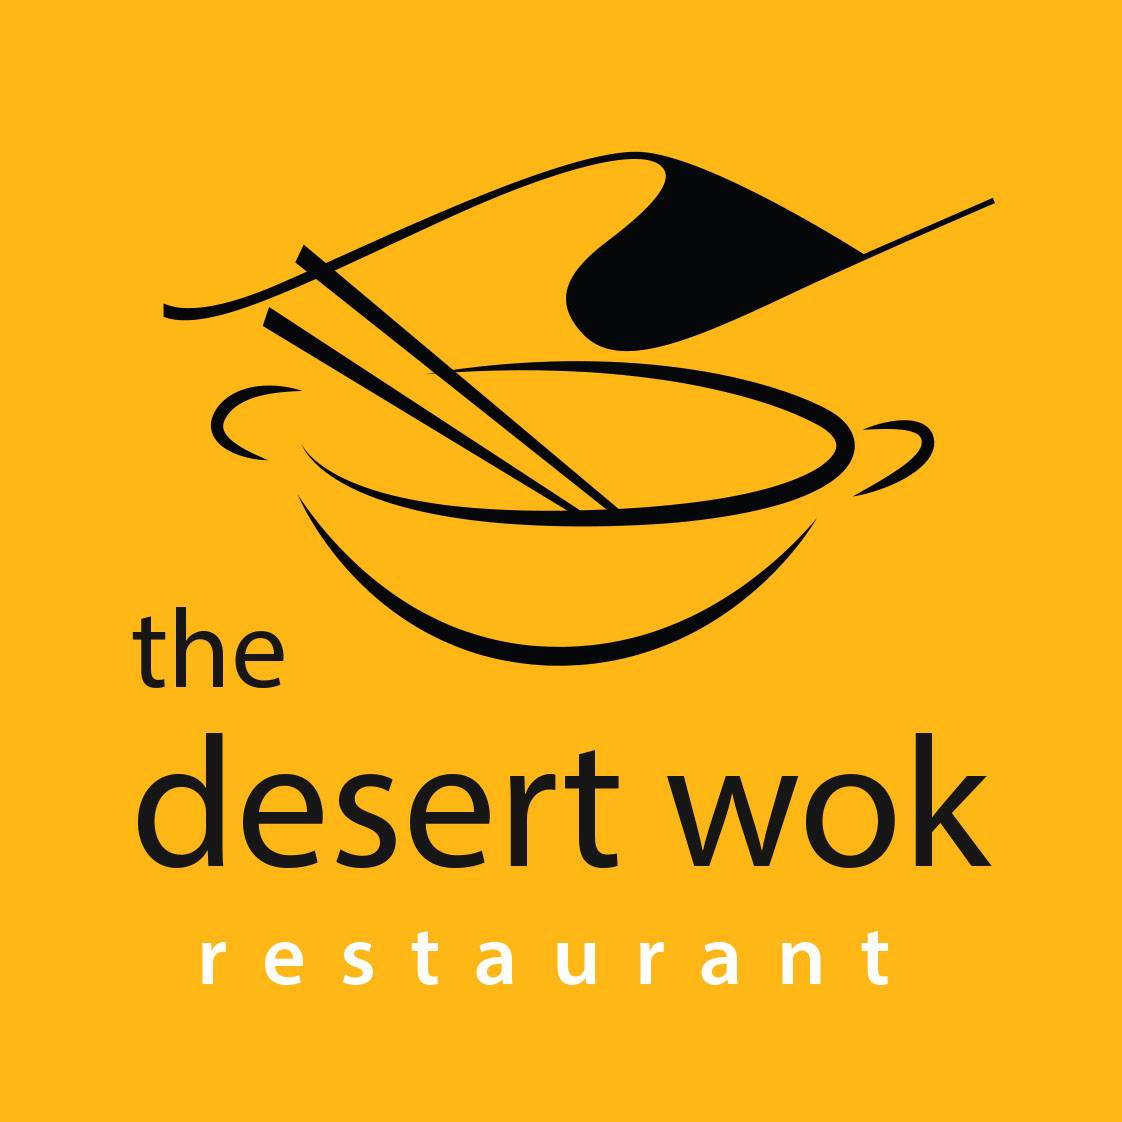 The Desert Wok Restaurant